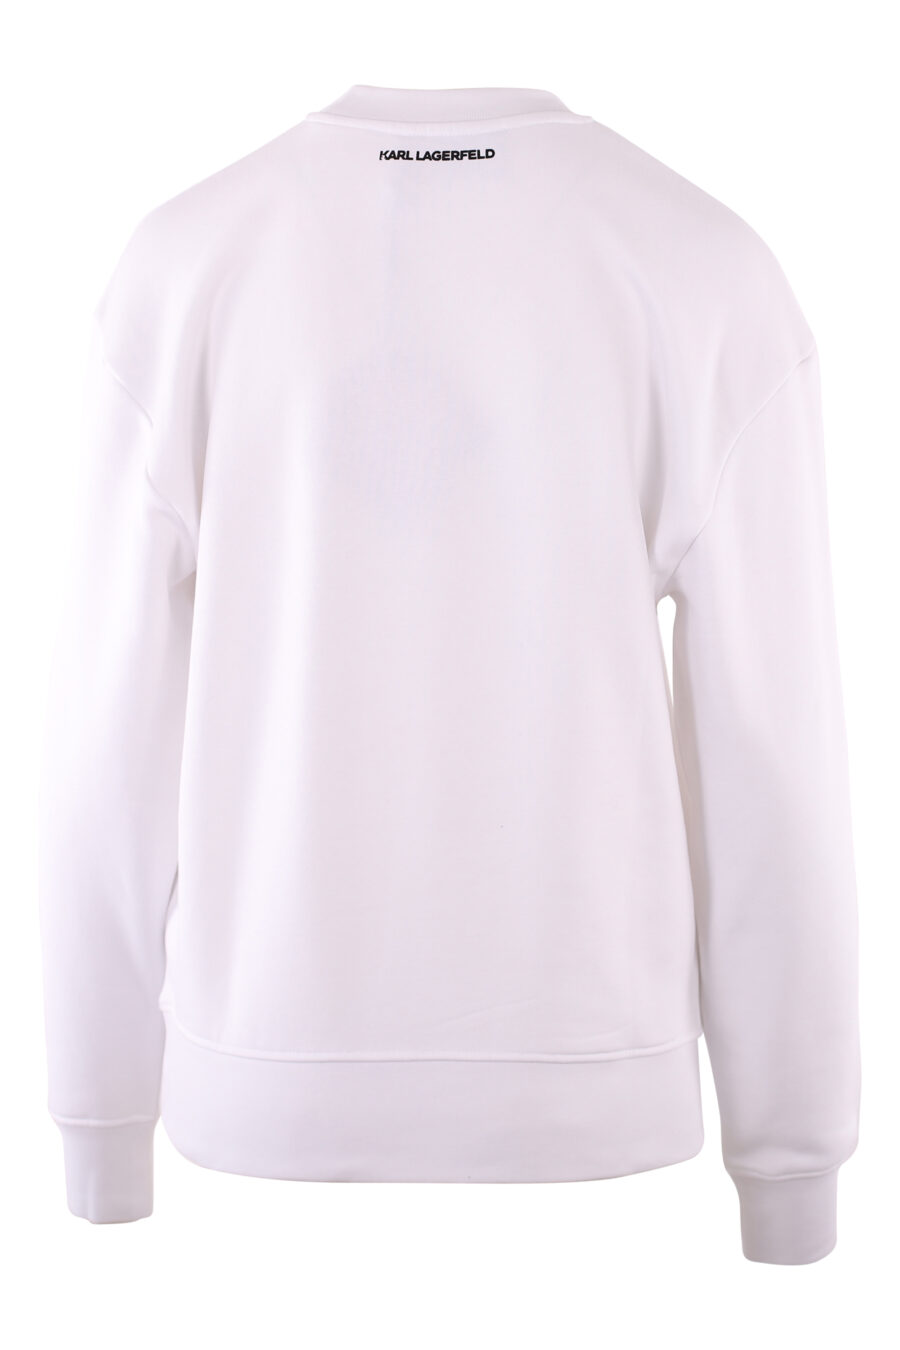 Weißes Sweatshirt mit großem schwarzen "Face"-Logo - IMG 6086